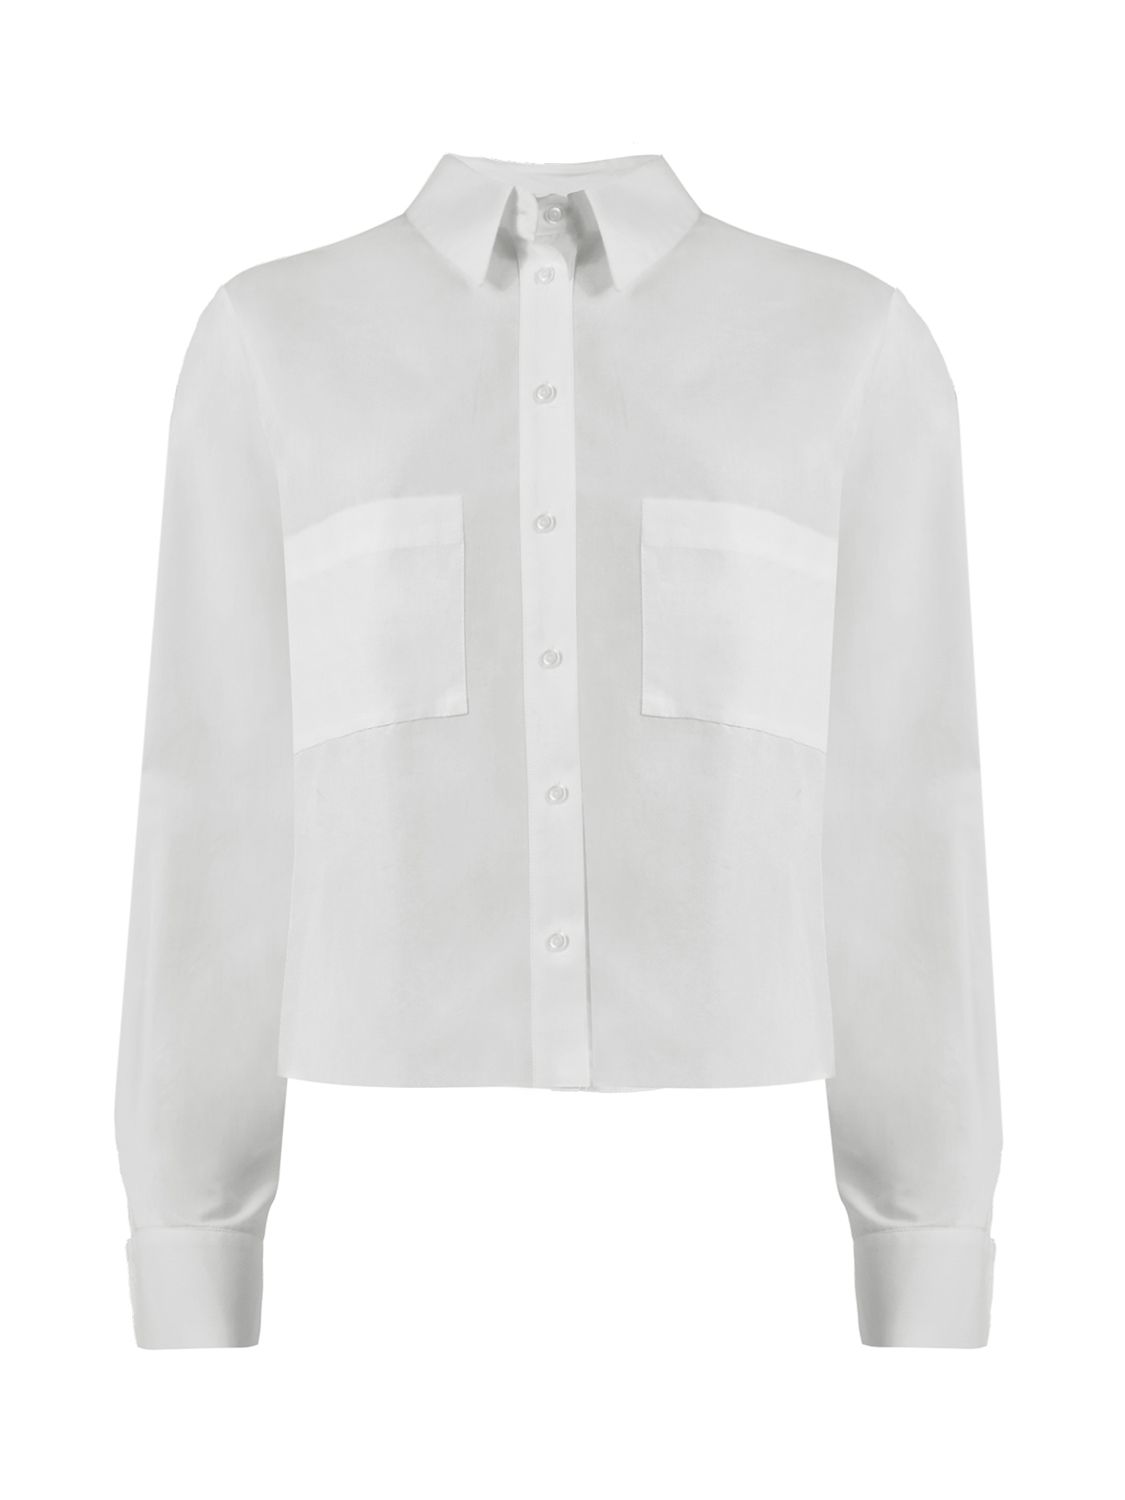 Ro&Zo Cotton Pocket Detail Shirt, White at John Lewis & Partners